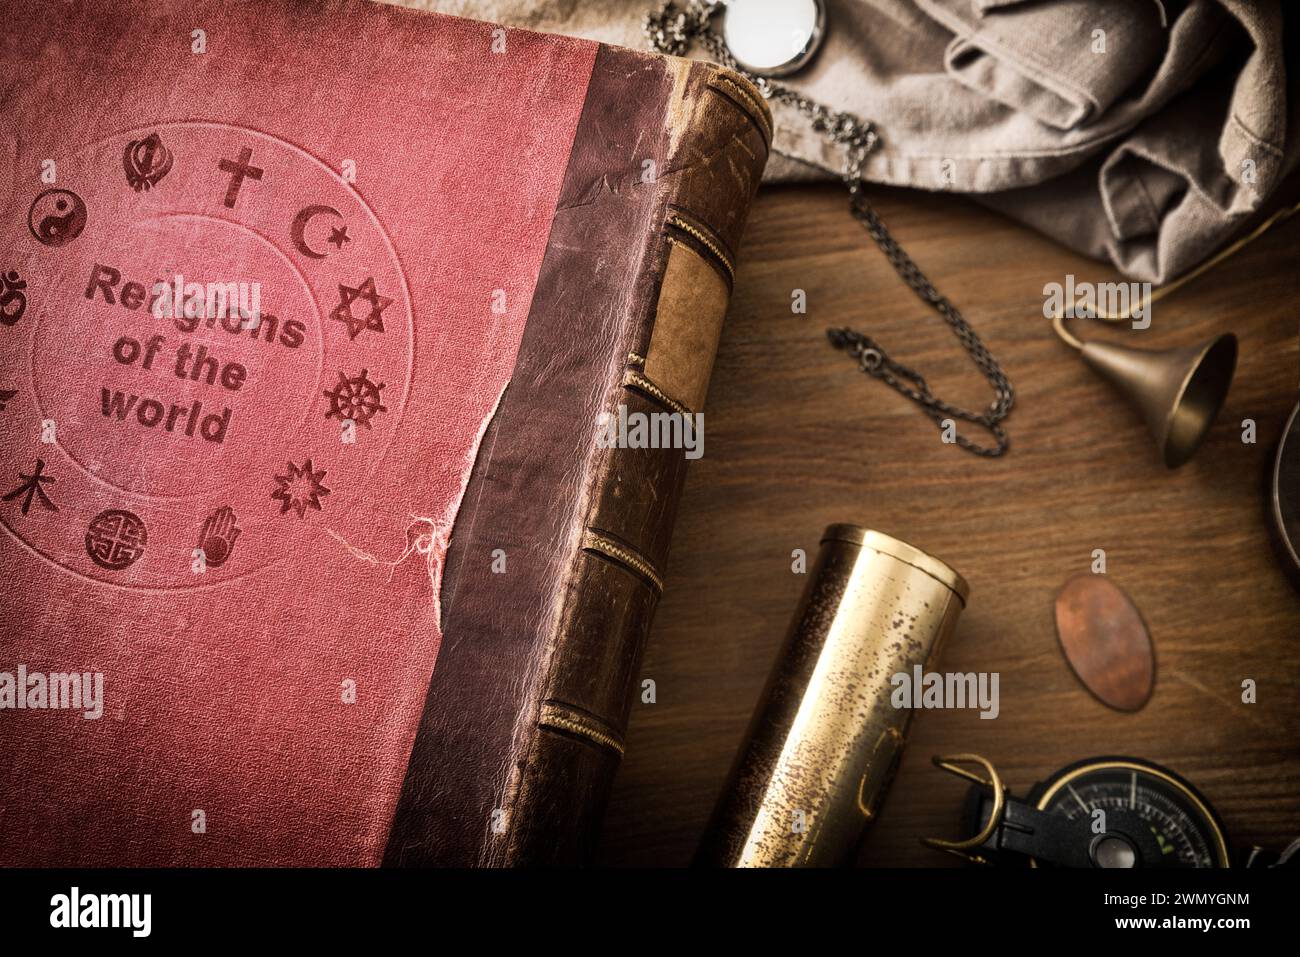 Détail de vieux livre de l'étude des religions dans le monde table en bois avec des objets décoratifs. Vue de dessus. Banque D'Images